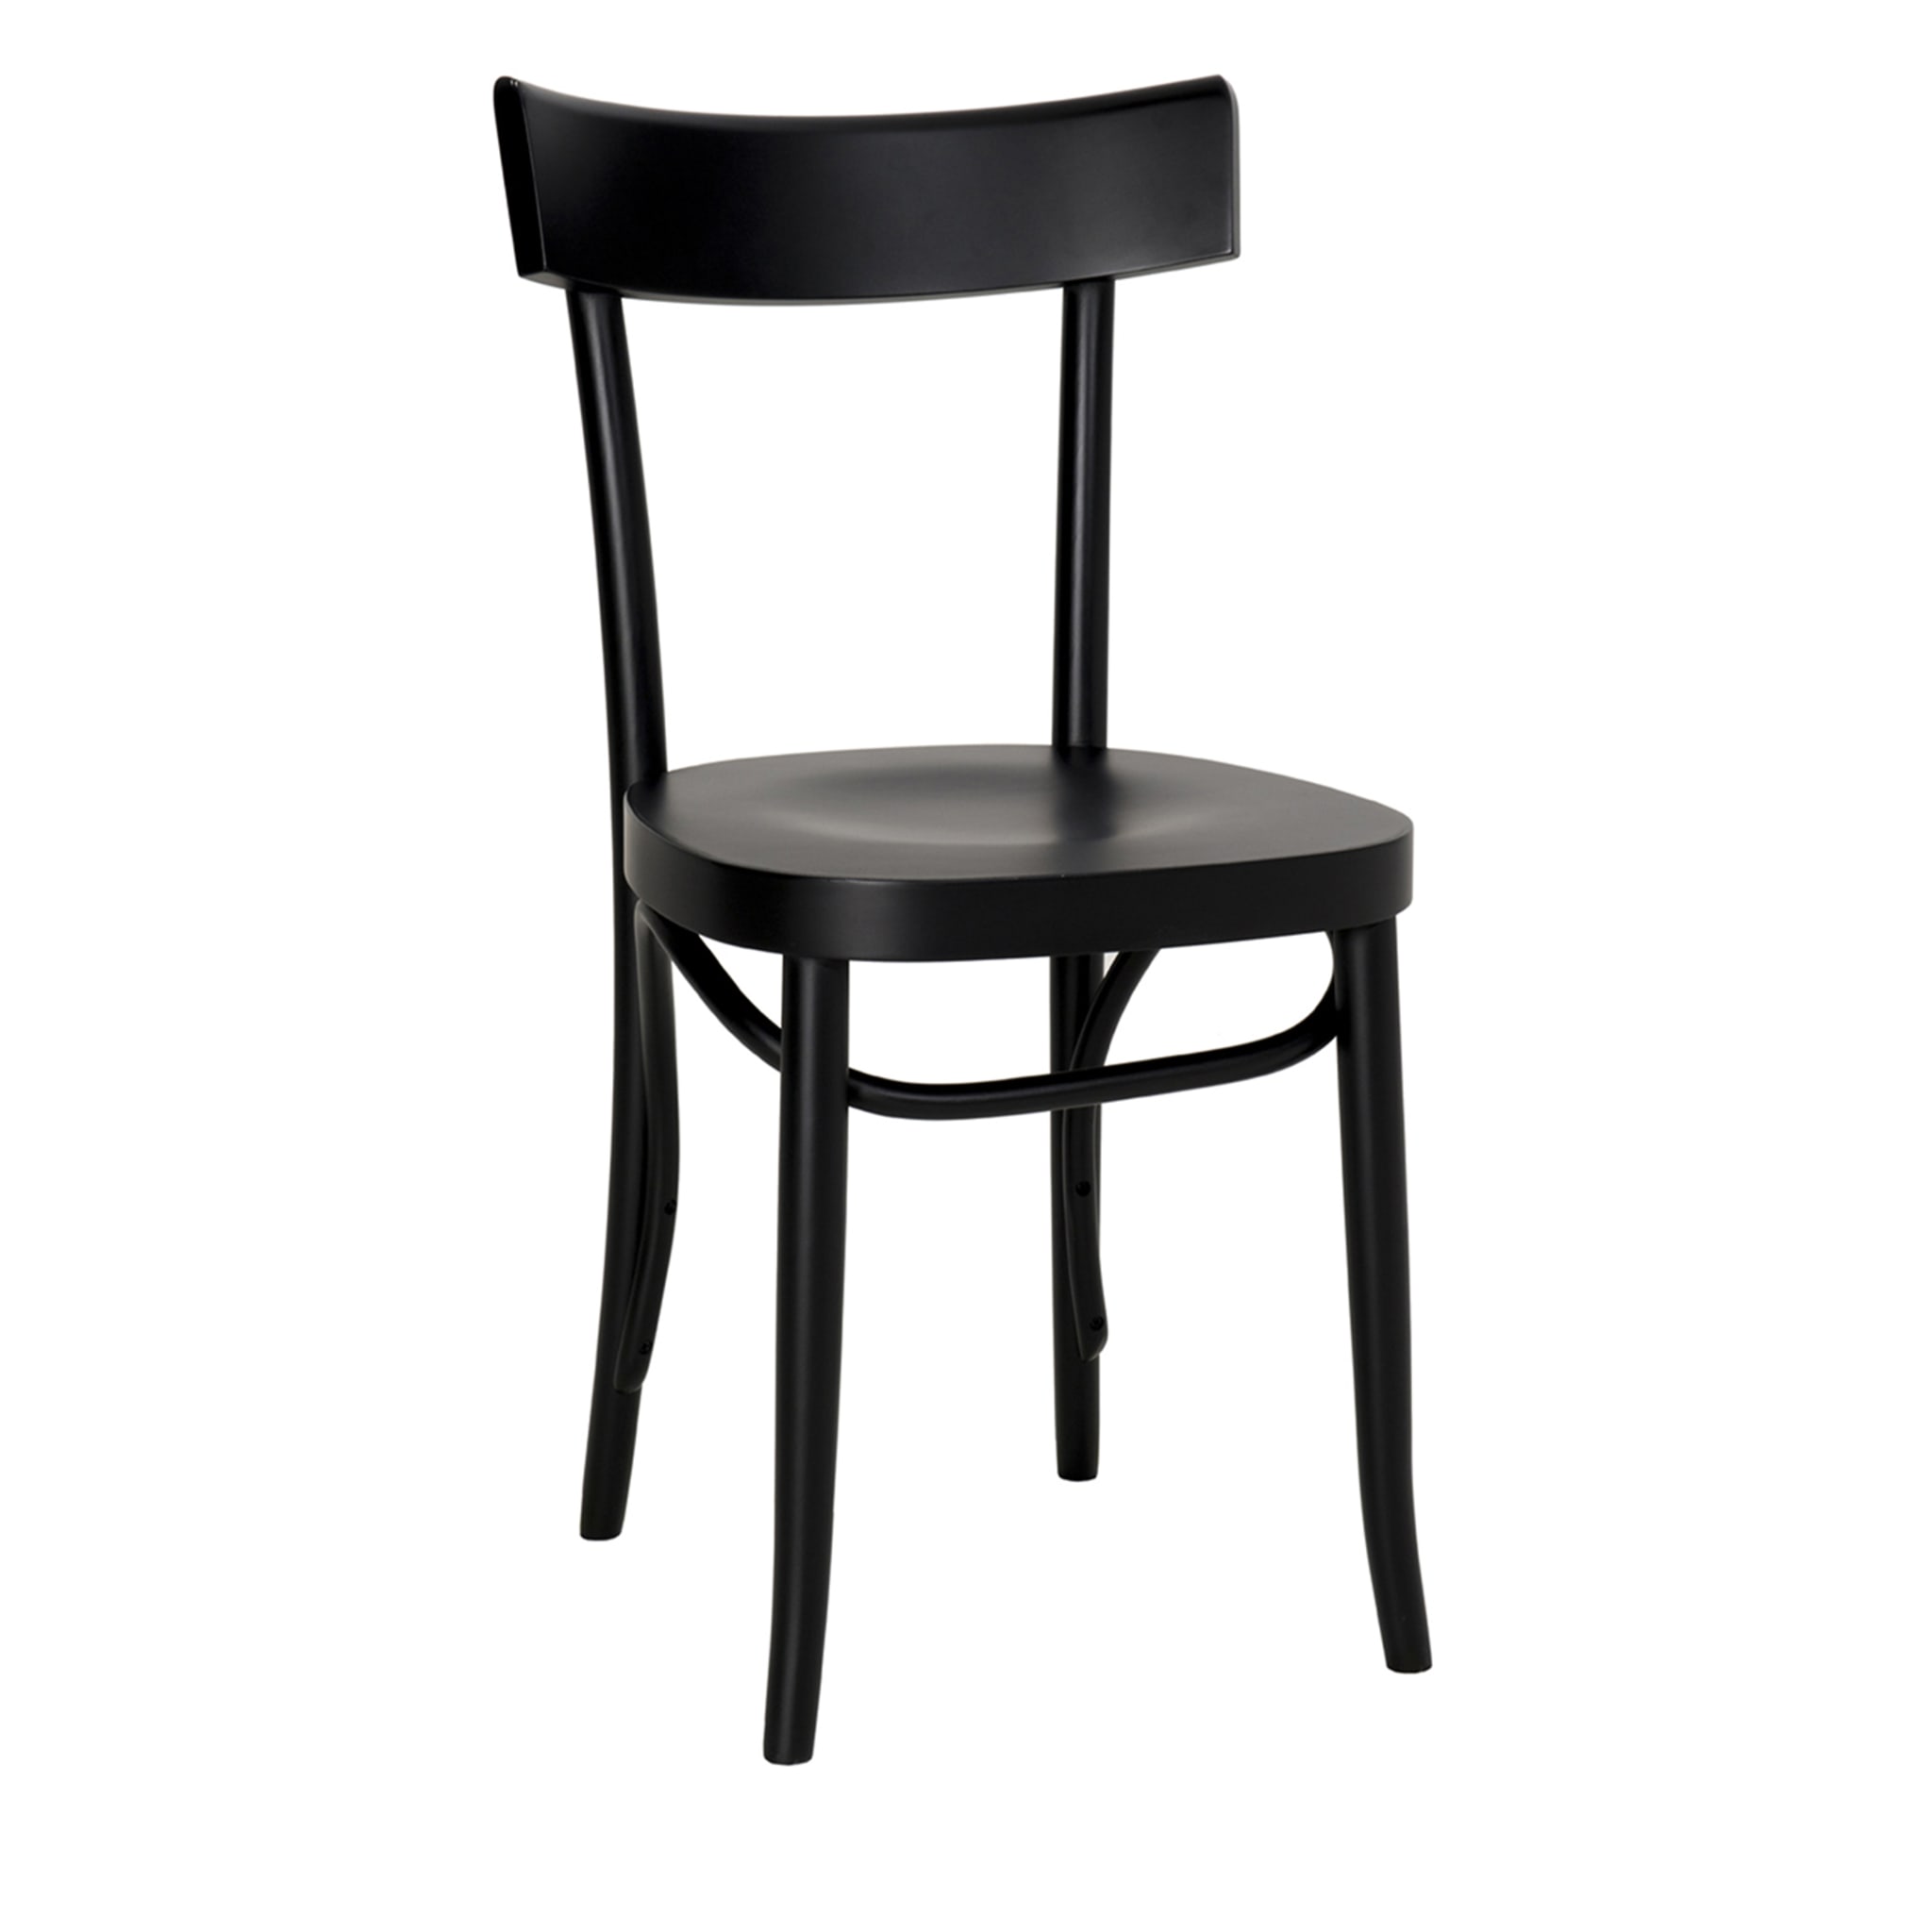 Chaise noire Brera de W. Colico - Vue principale